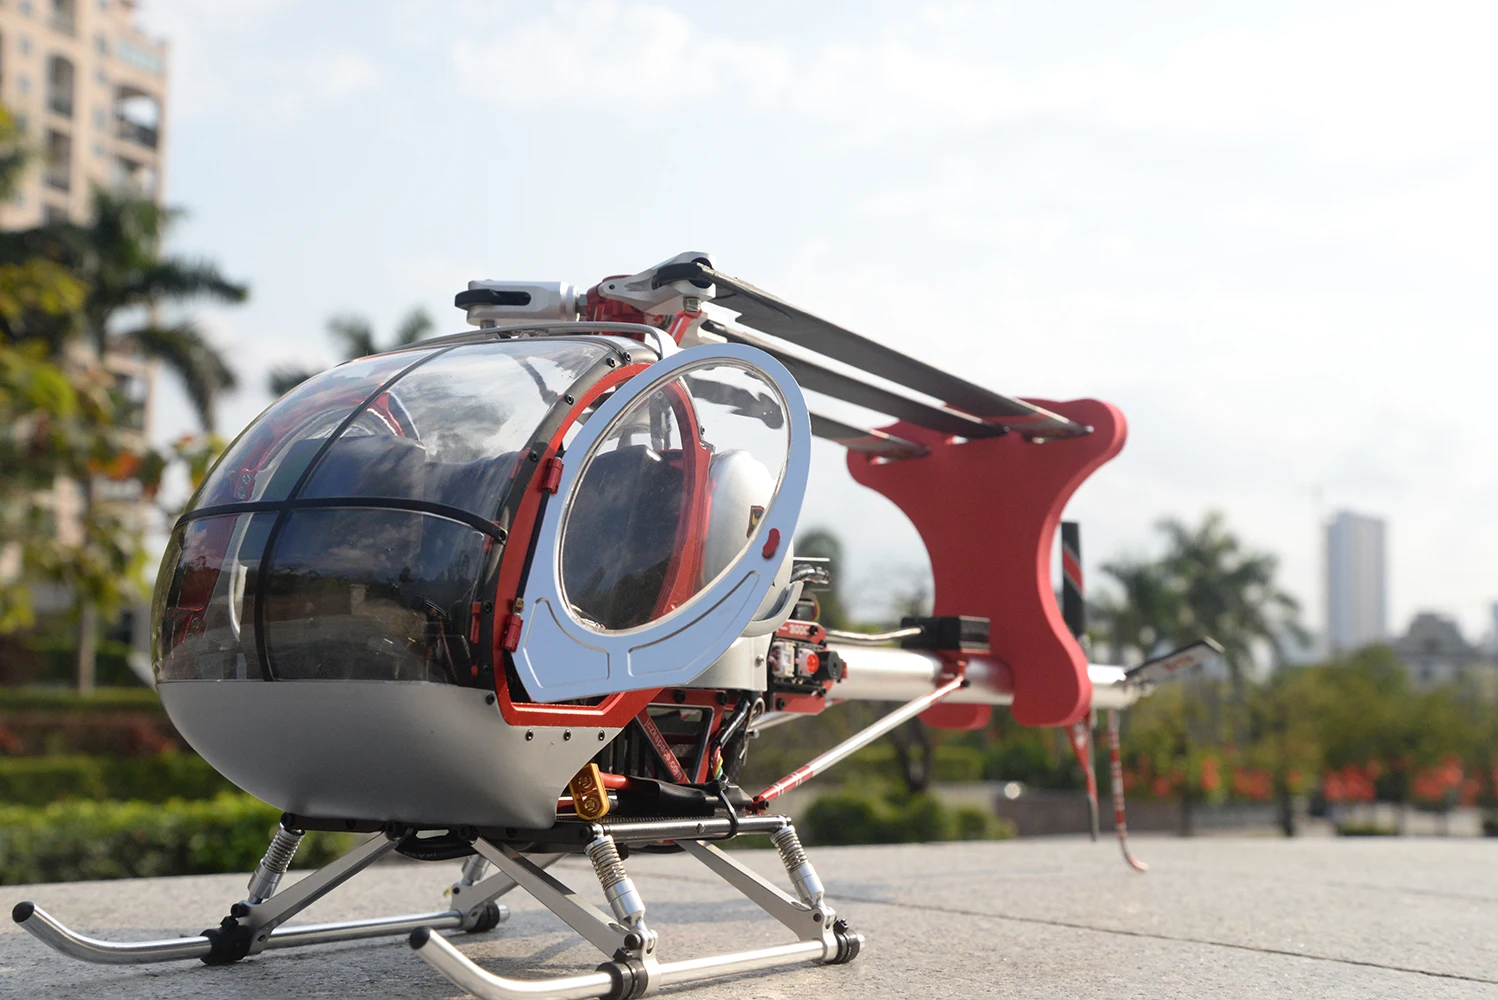 Хугес 300c RC вертолет 9CH вертолета дрона с дистанционным управлением режим 2 бесколлекторный р/у вертолет RTF Бла(беспилотный летательный аппарат 3-осевой игрушки для подарка